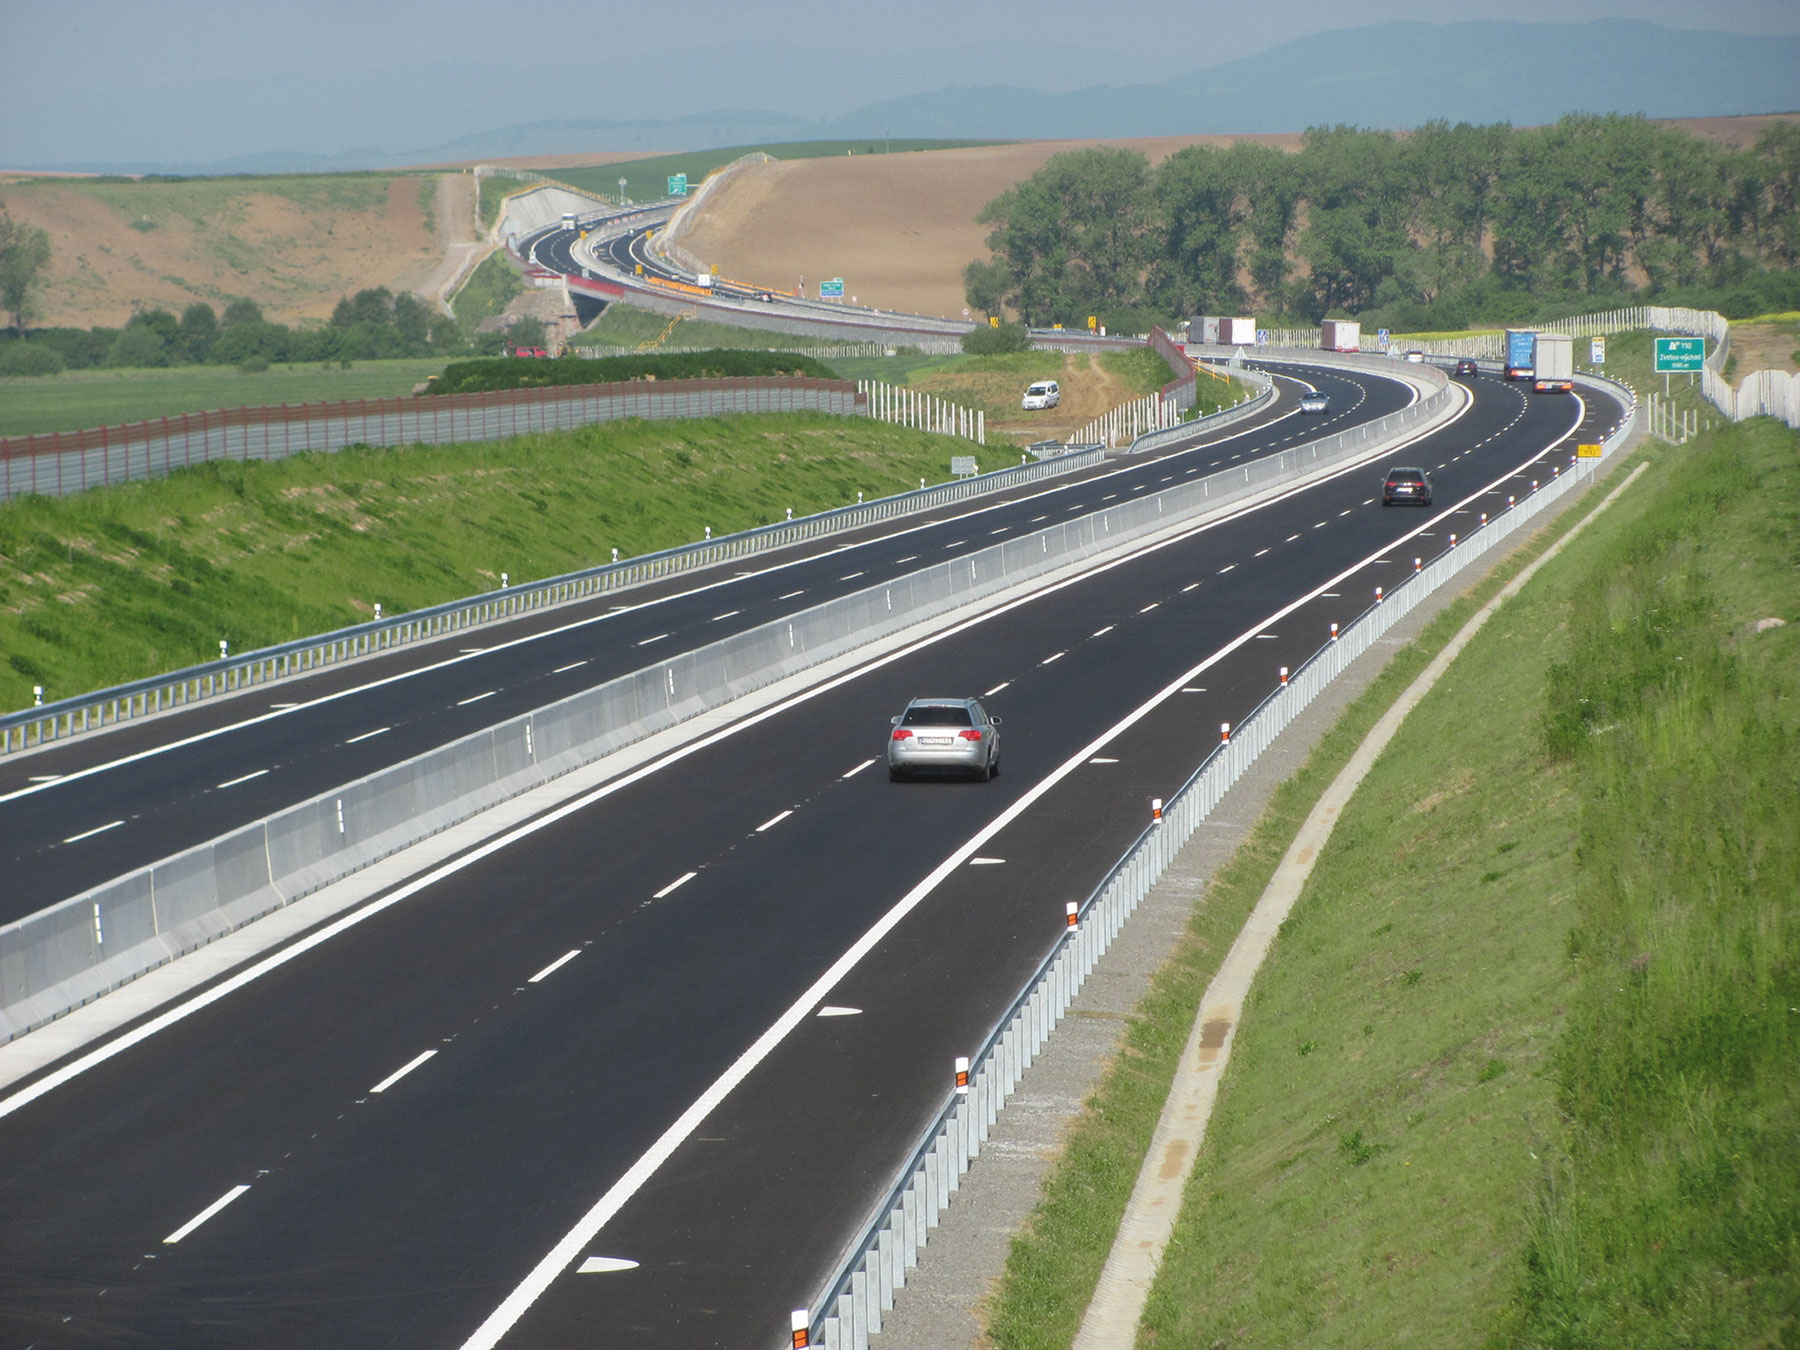 Predmetný úsek rýchlostnej cesty má 92 stavebných objektov. Hlavným cestným stavebným objektom bola rýchlostná cesta R2 kategórie R24,5/120.